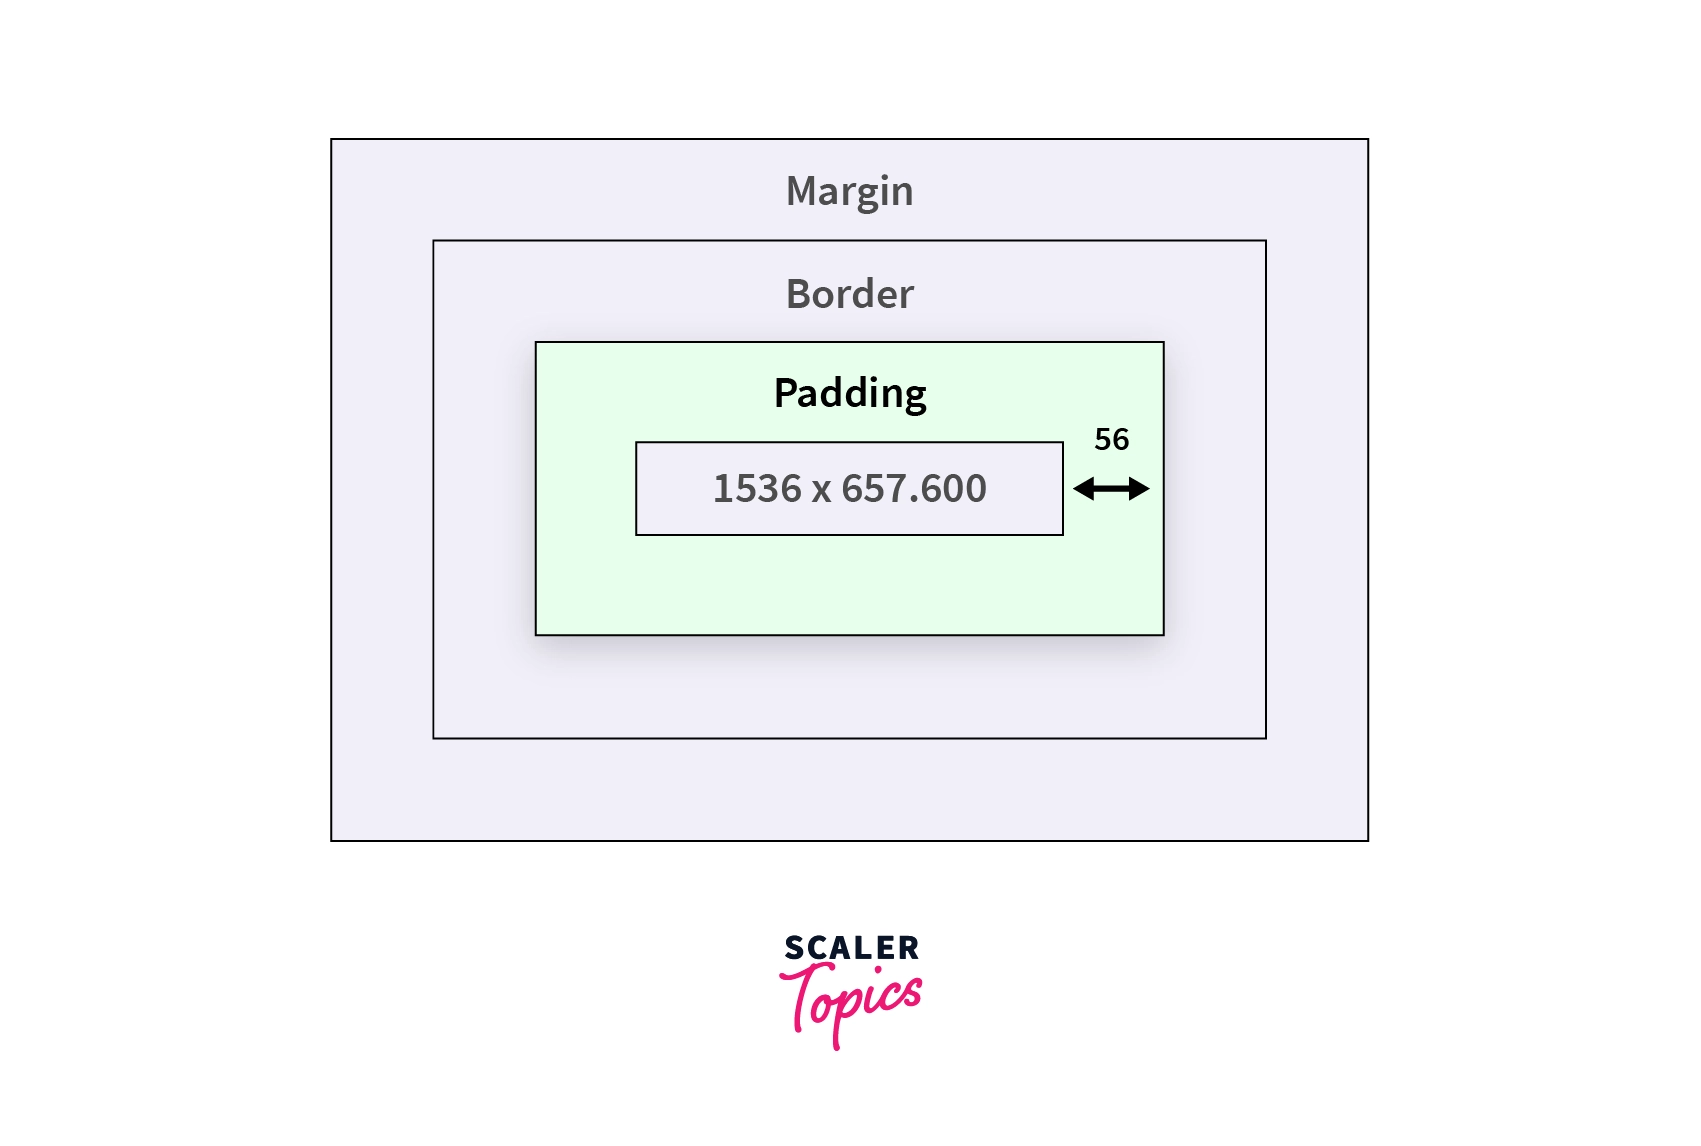 Padding vs Margin